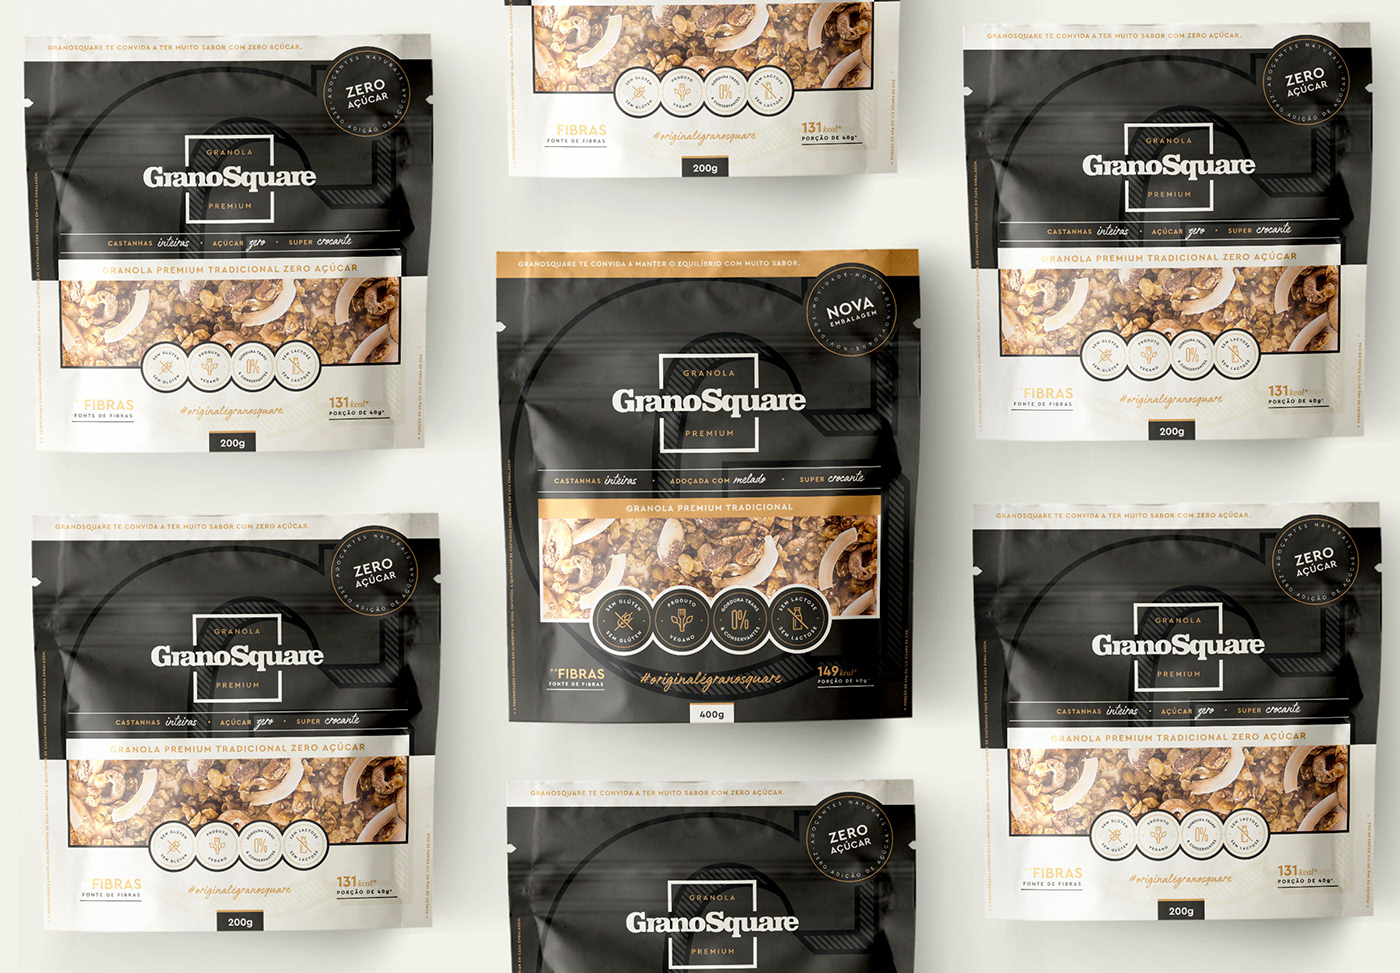 VALKIRIA design branding  Packaging graphic design  logo granola premium package